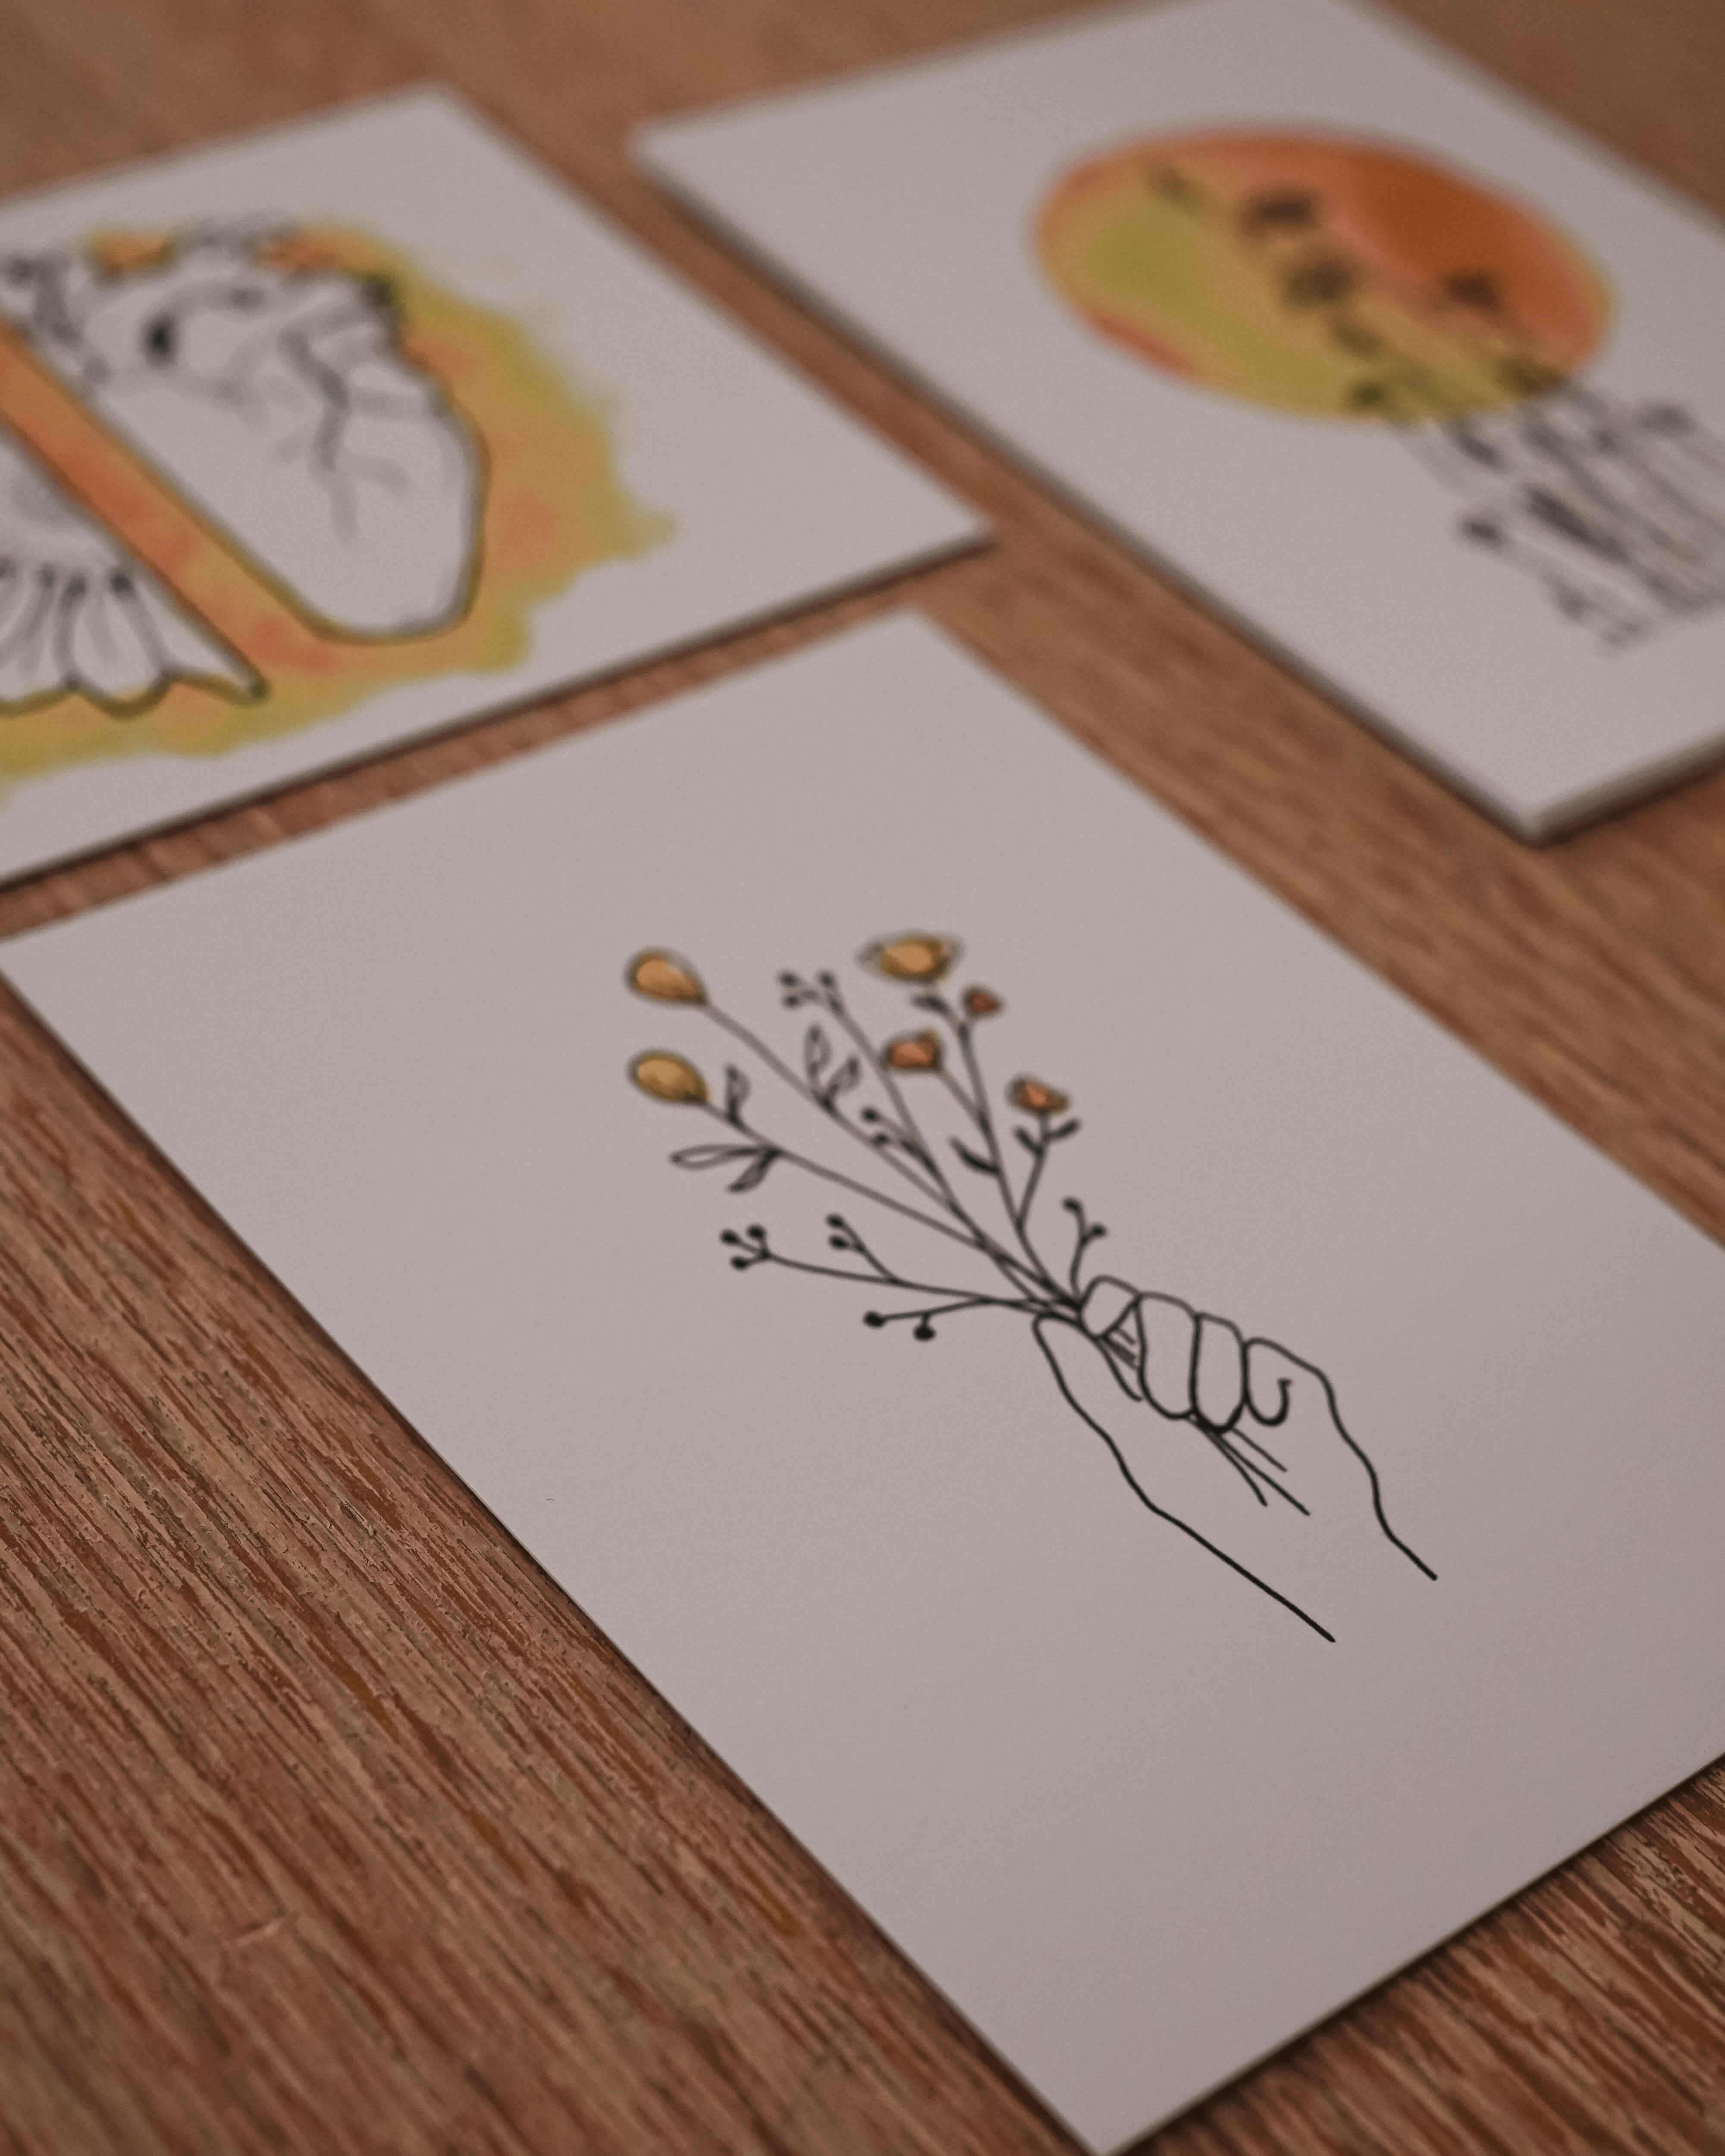 Postkarten-Set zu "Weil Sonnenblumen auch im  Winter blühen"